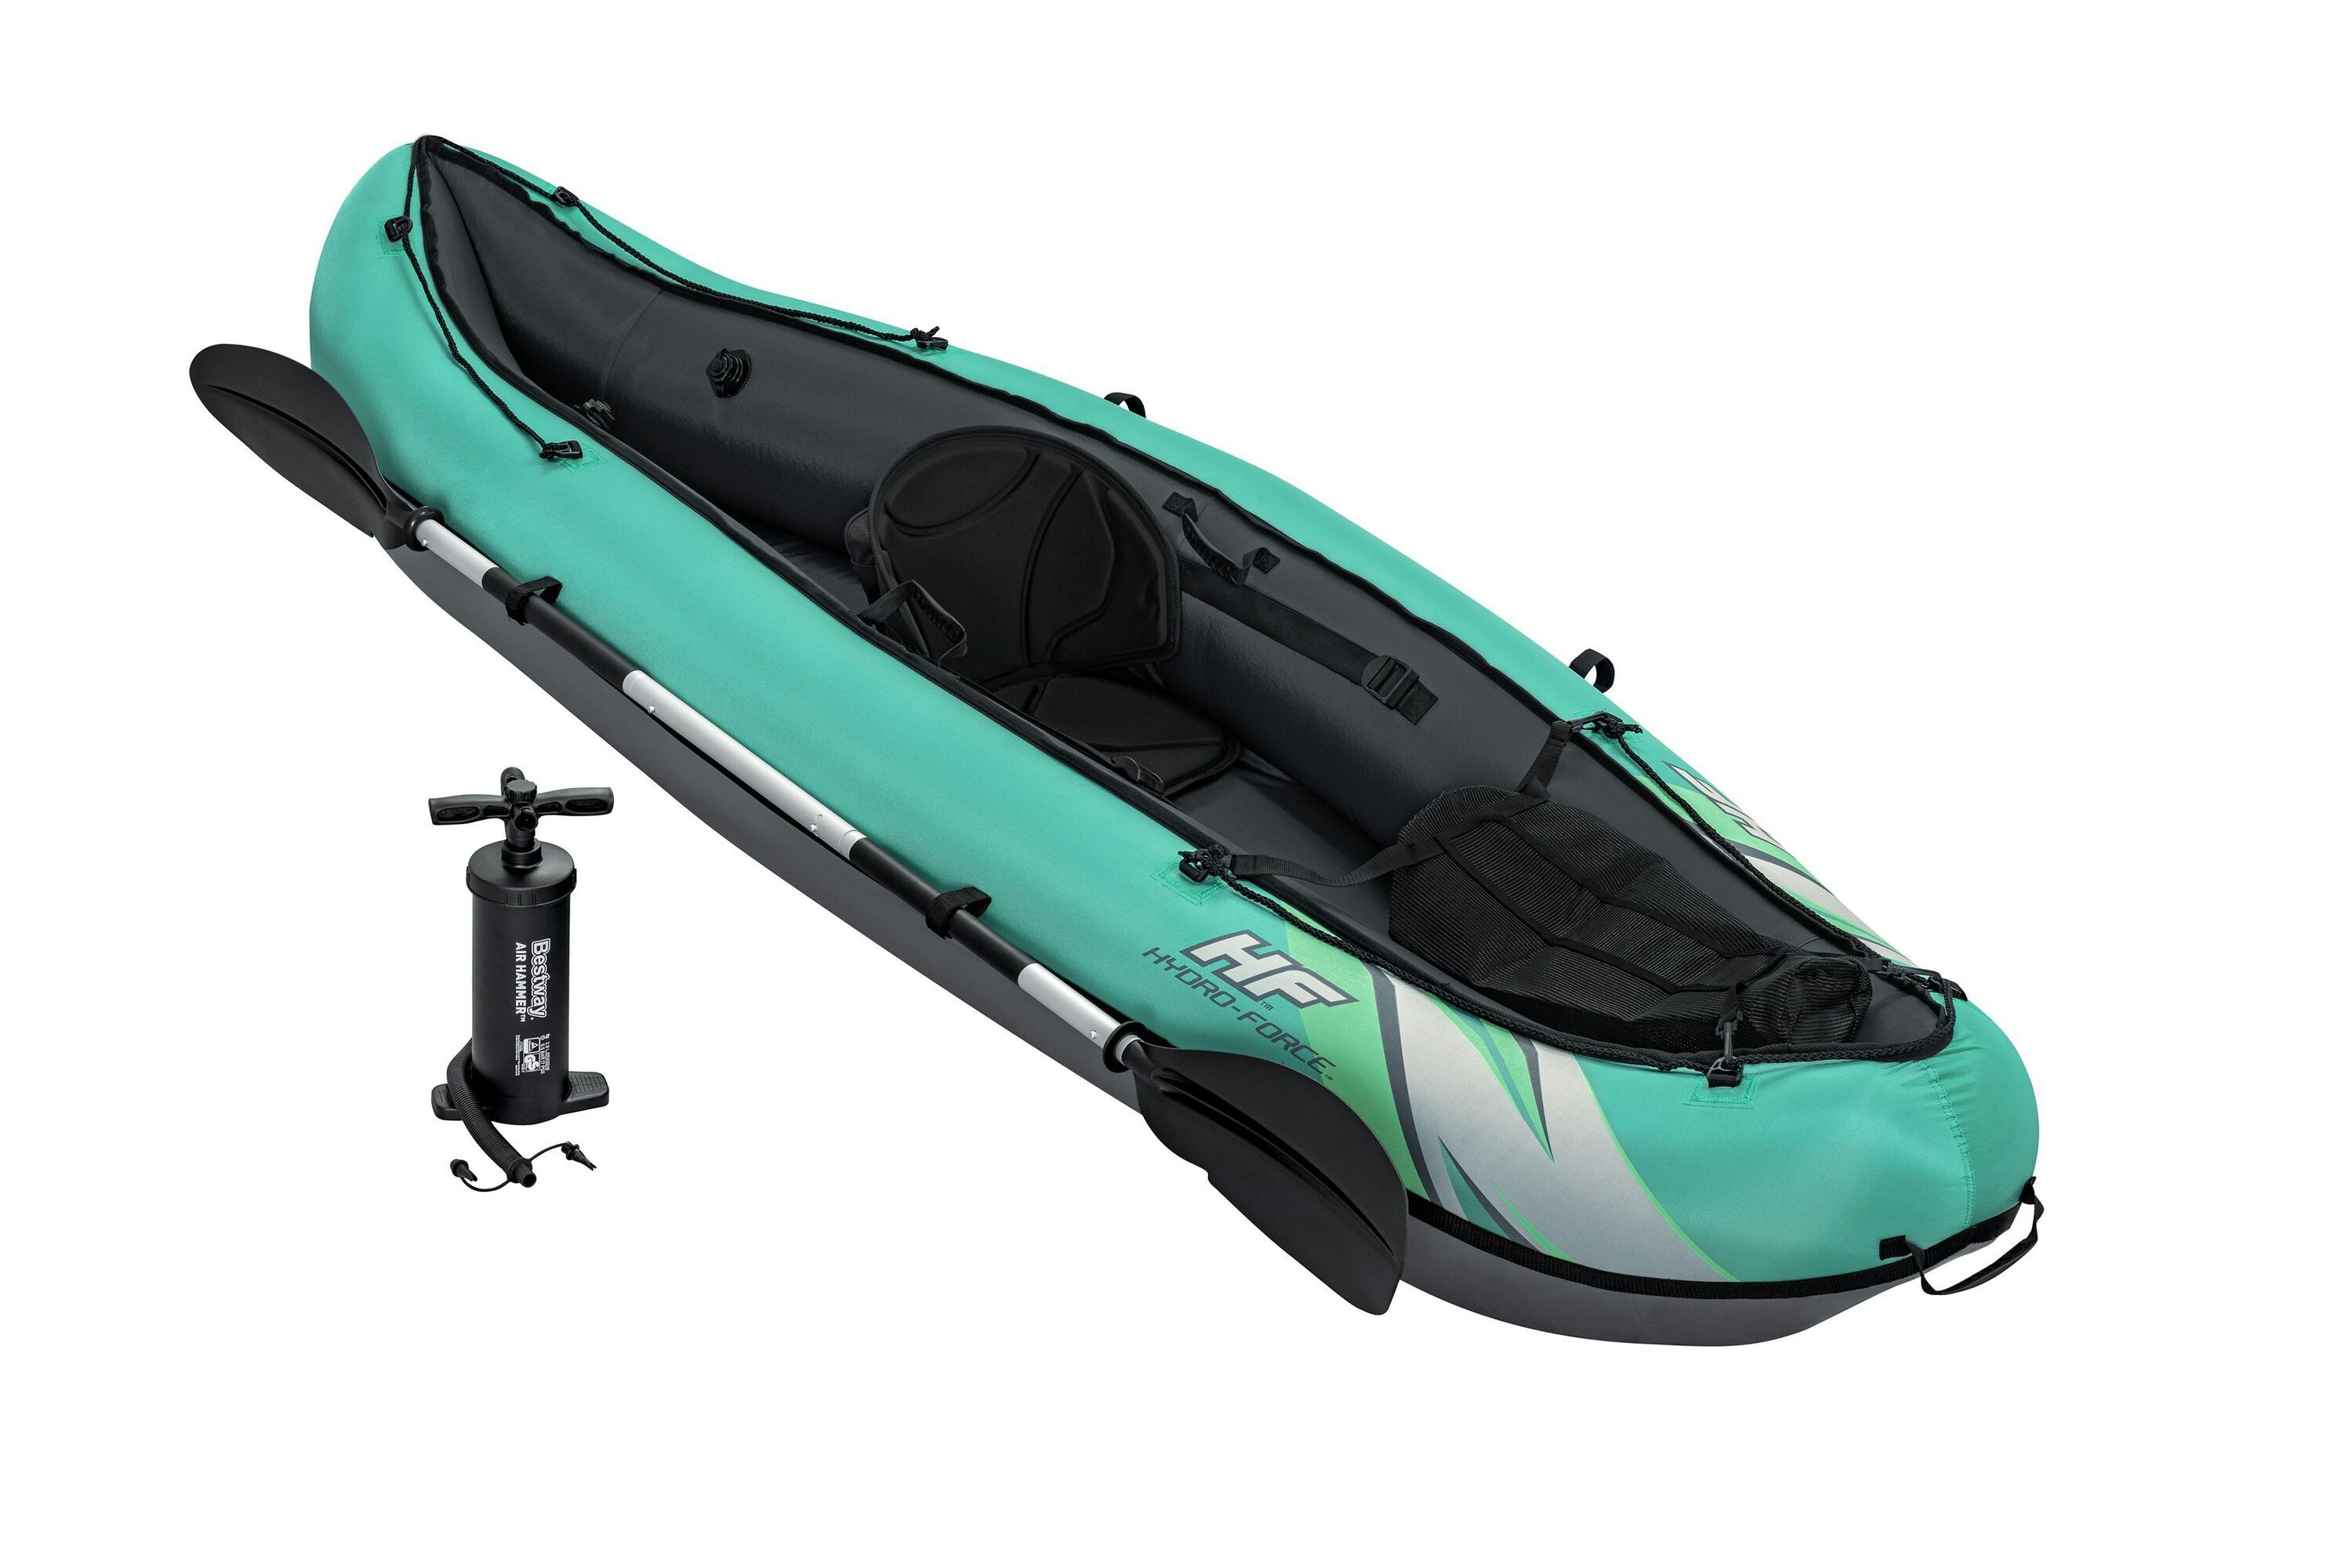 Sports d'eau Kayak gonflable Hydro-Force™ Ventura Elite X1 280 x 86 cm 1 personne, pagaie, pompe Bestway 1